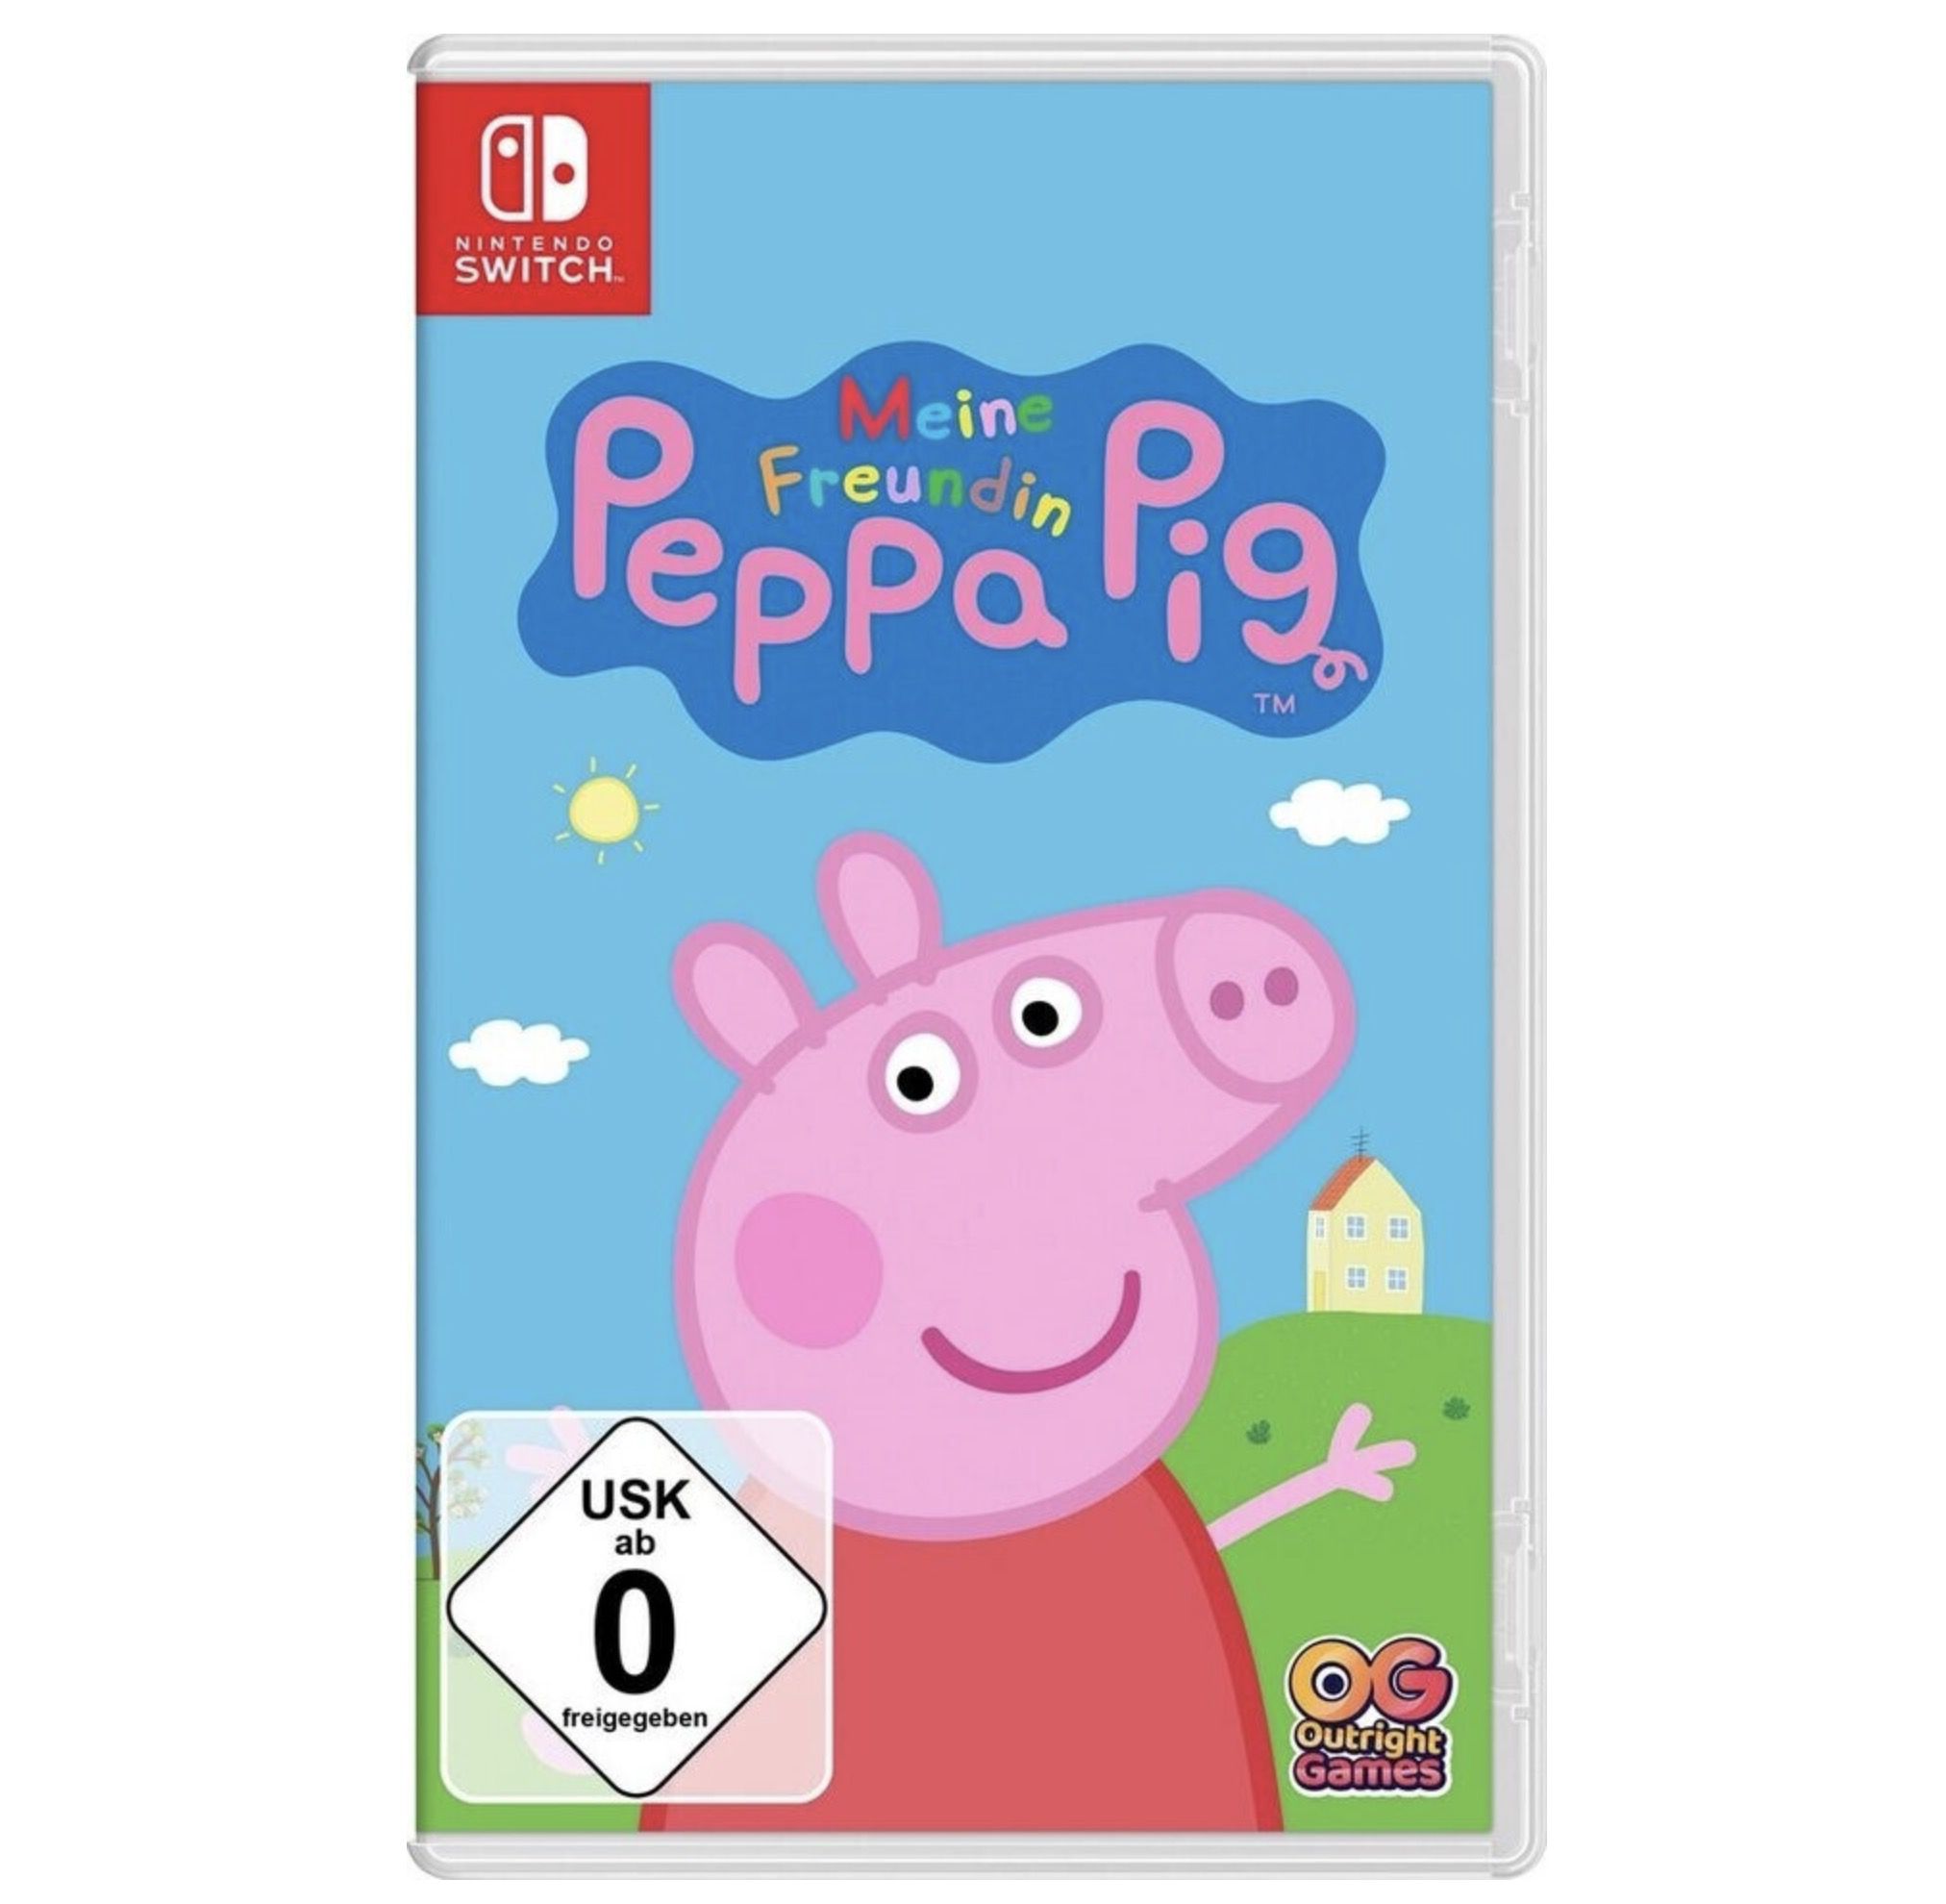 Meine Freundin Peppa Pig (Switch) für 15,99€ (statt 22€)   Prime